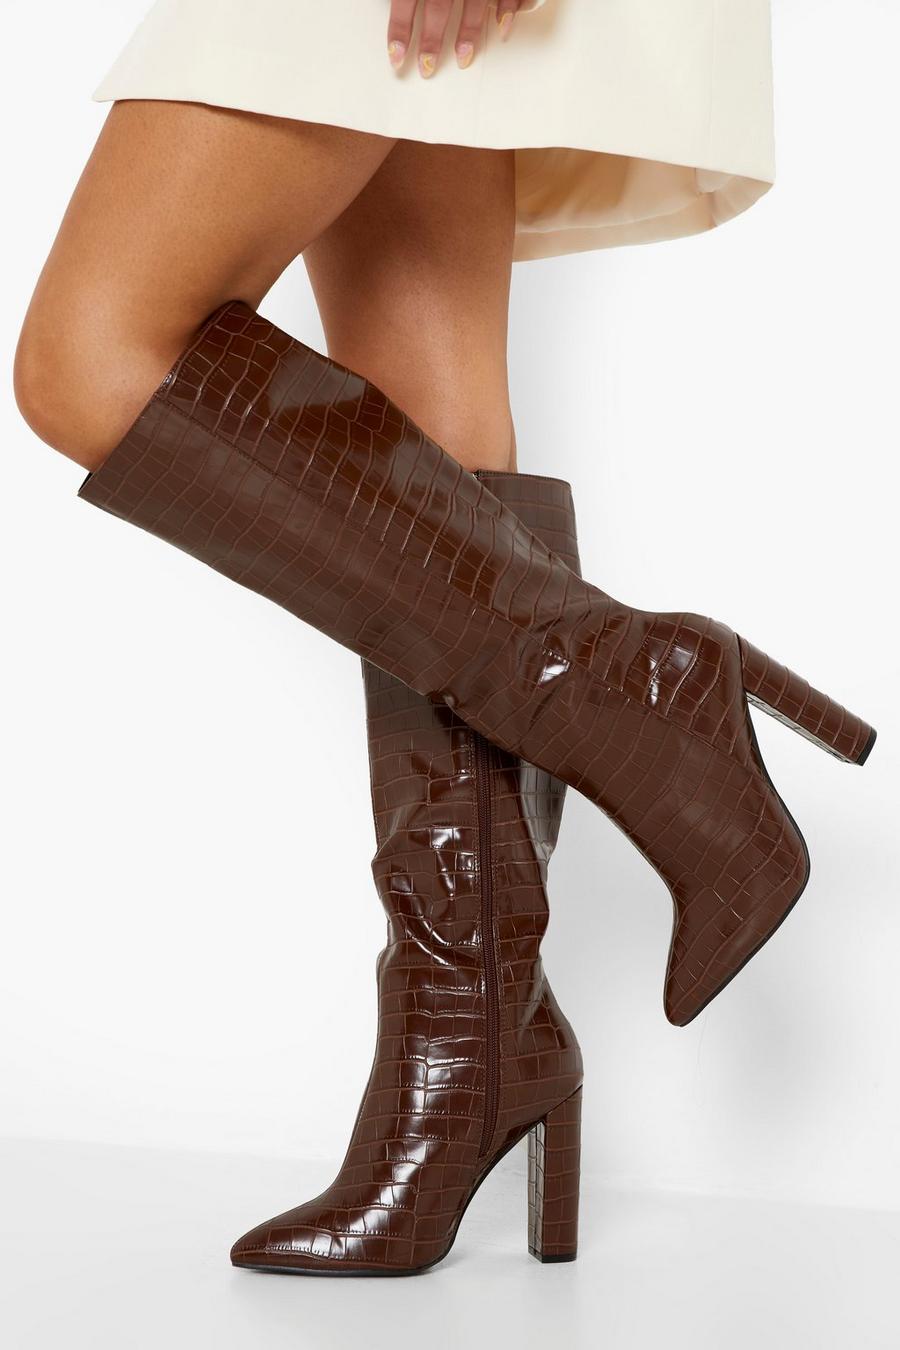 שוקולד marrón מגפיים בגובה הברך עם אפקט עור תנין וקצה מחודד, לרגל רחבה